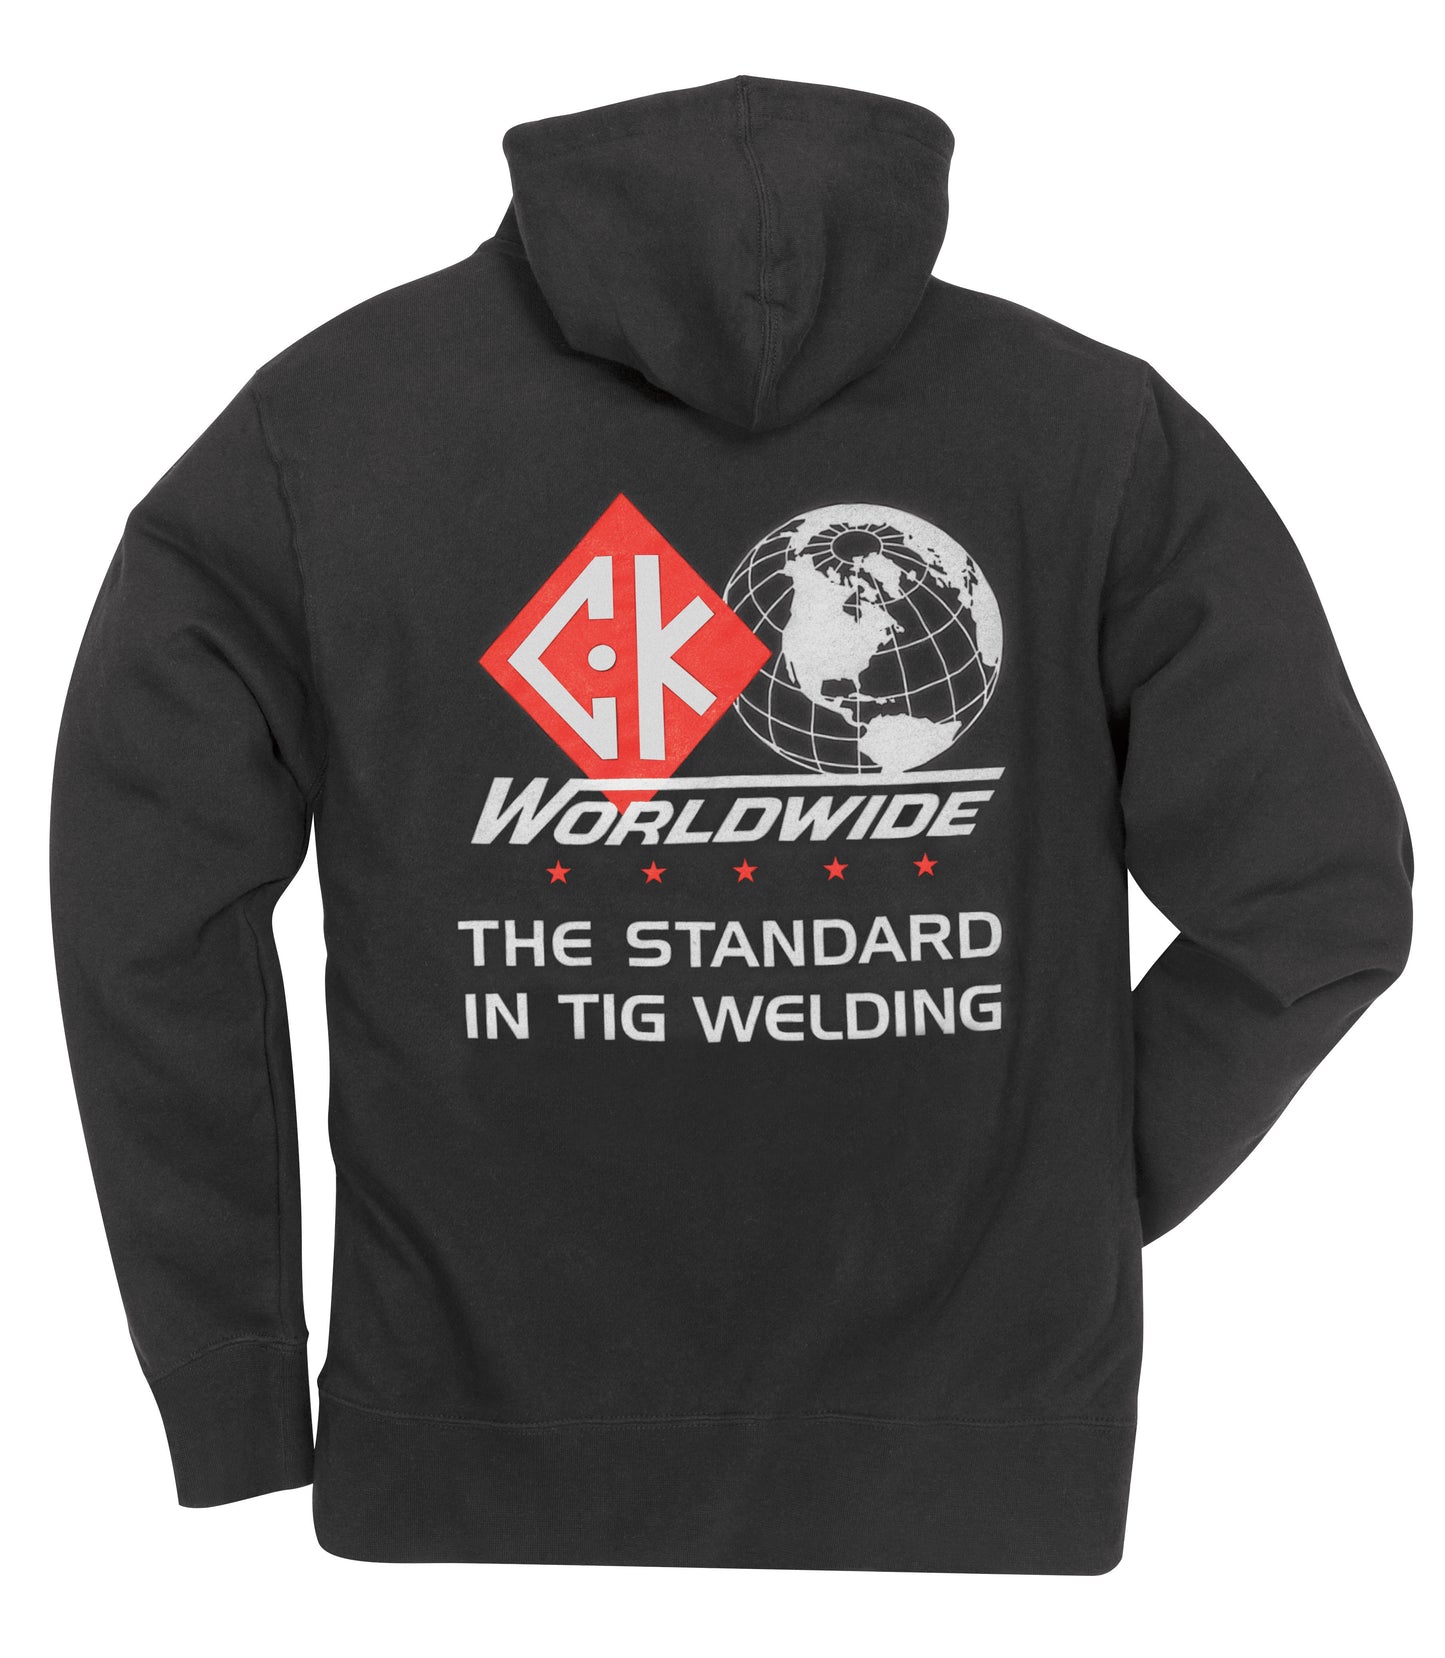 CK Worldwide Sweatshirt